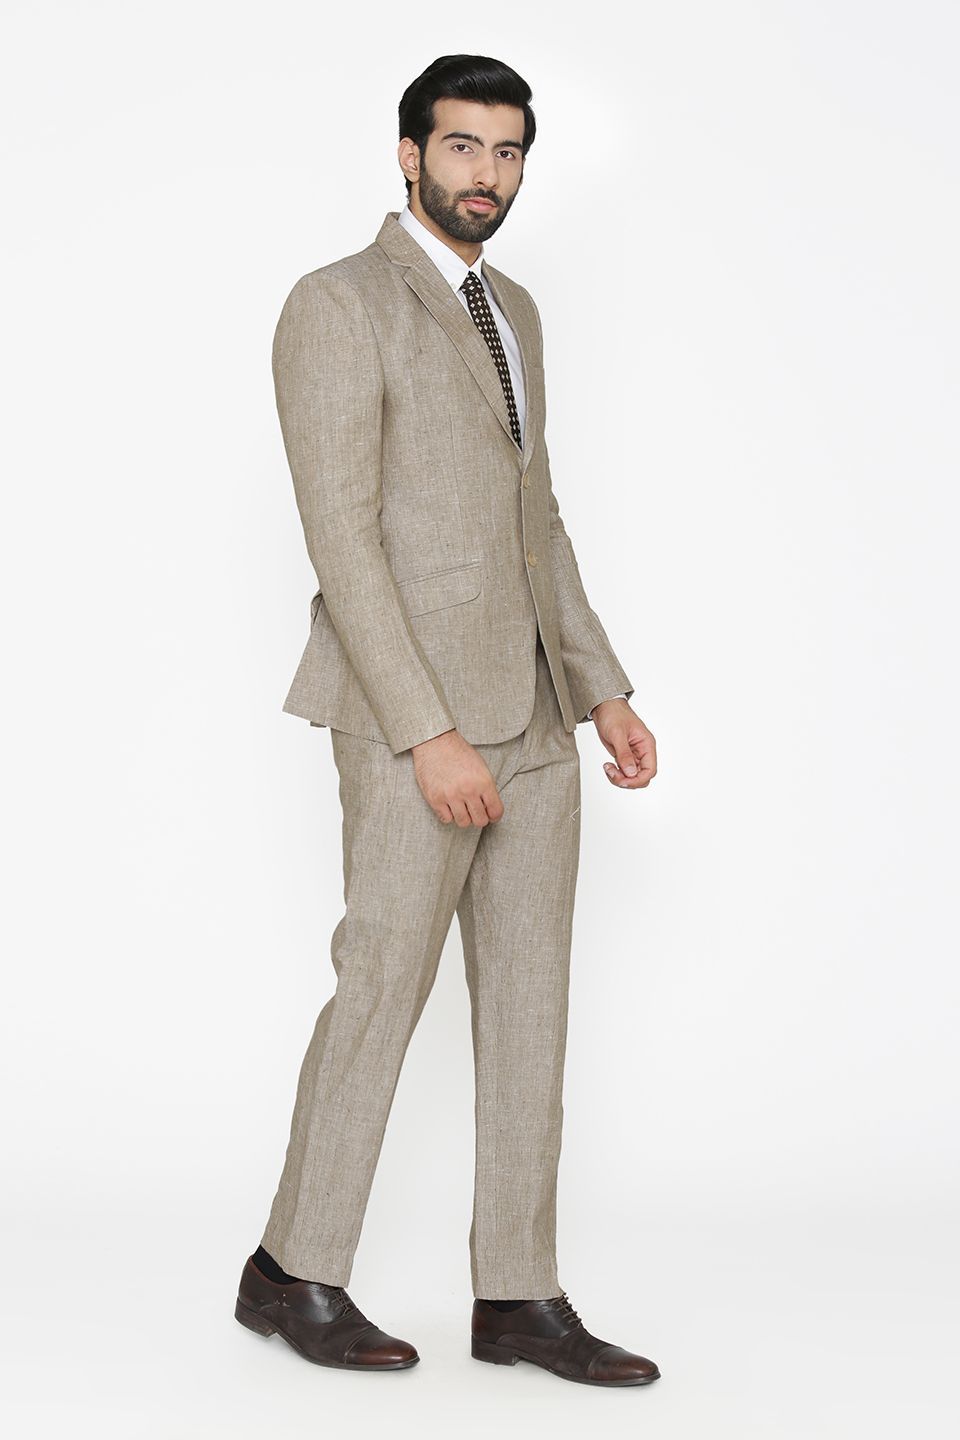 100% Pure Linen by Linen Club White Suit